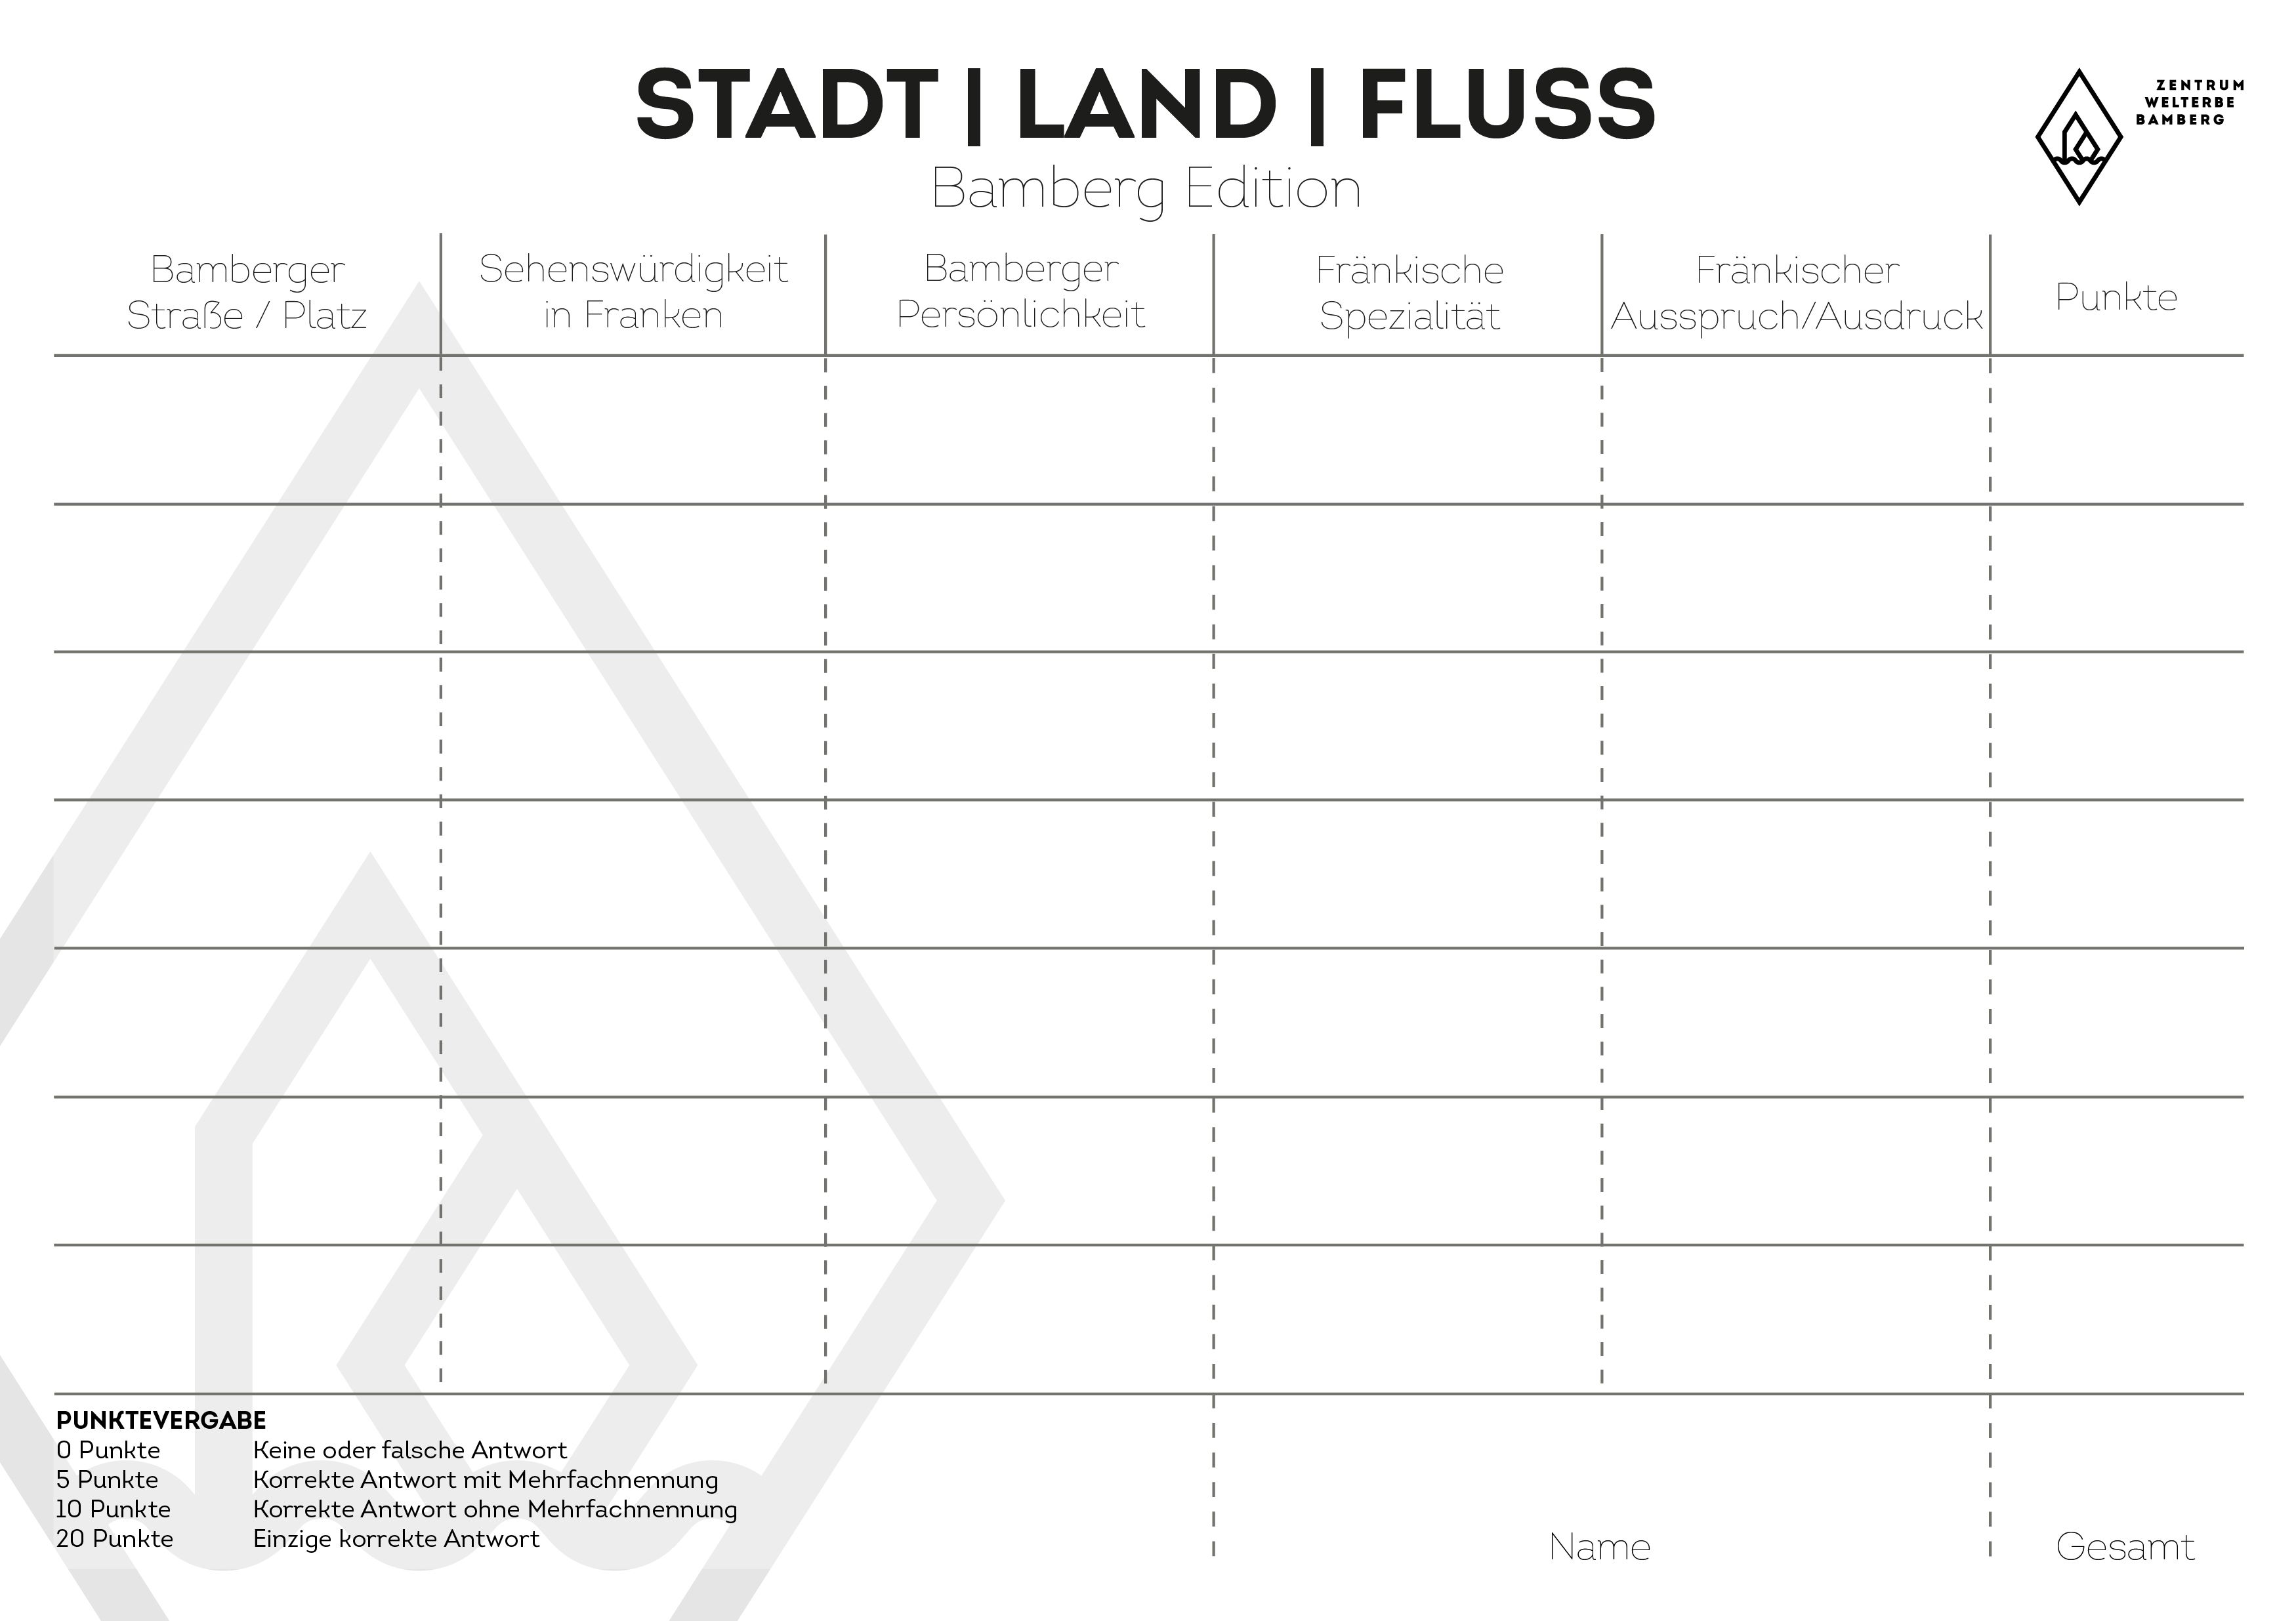 zwb_stadt-land-fluss_bamberg-edition_sw.jpg